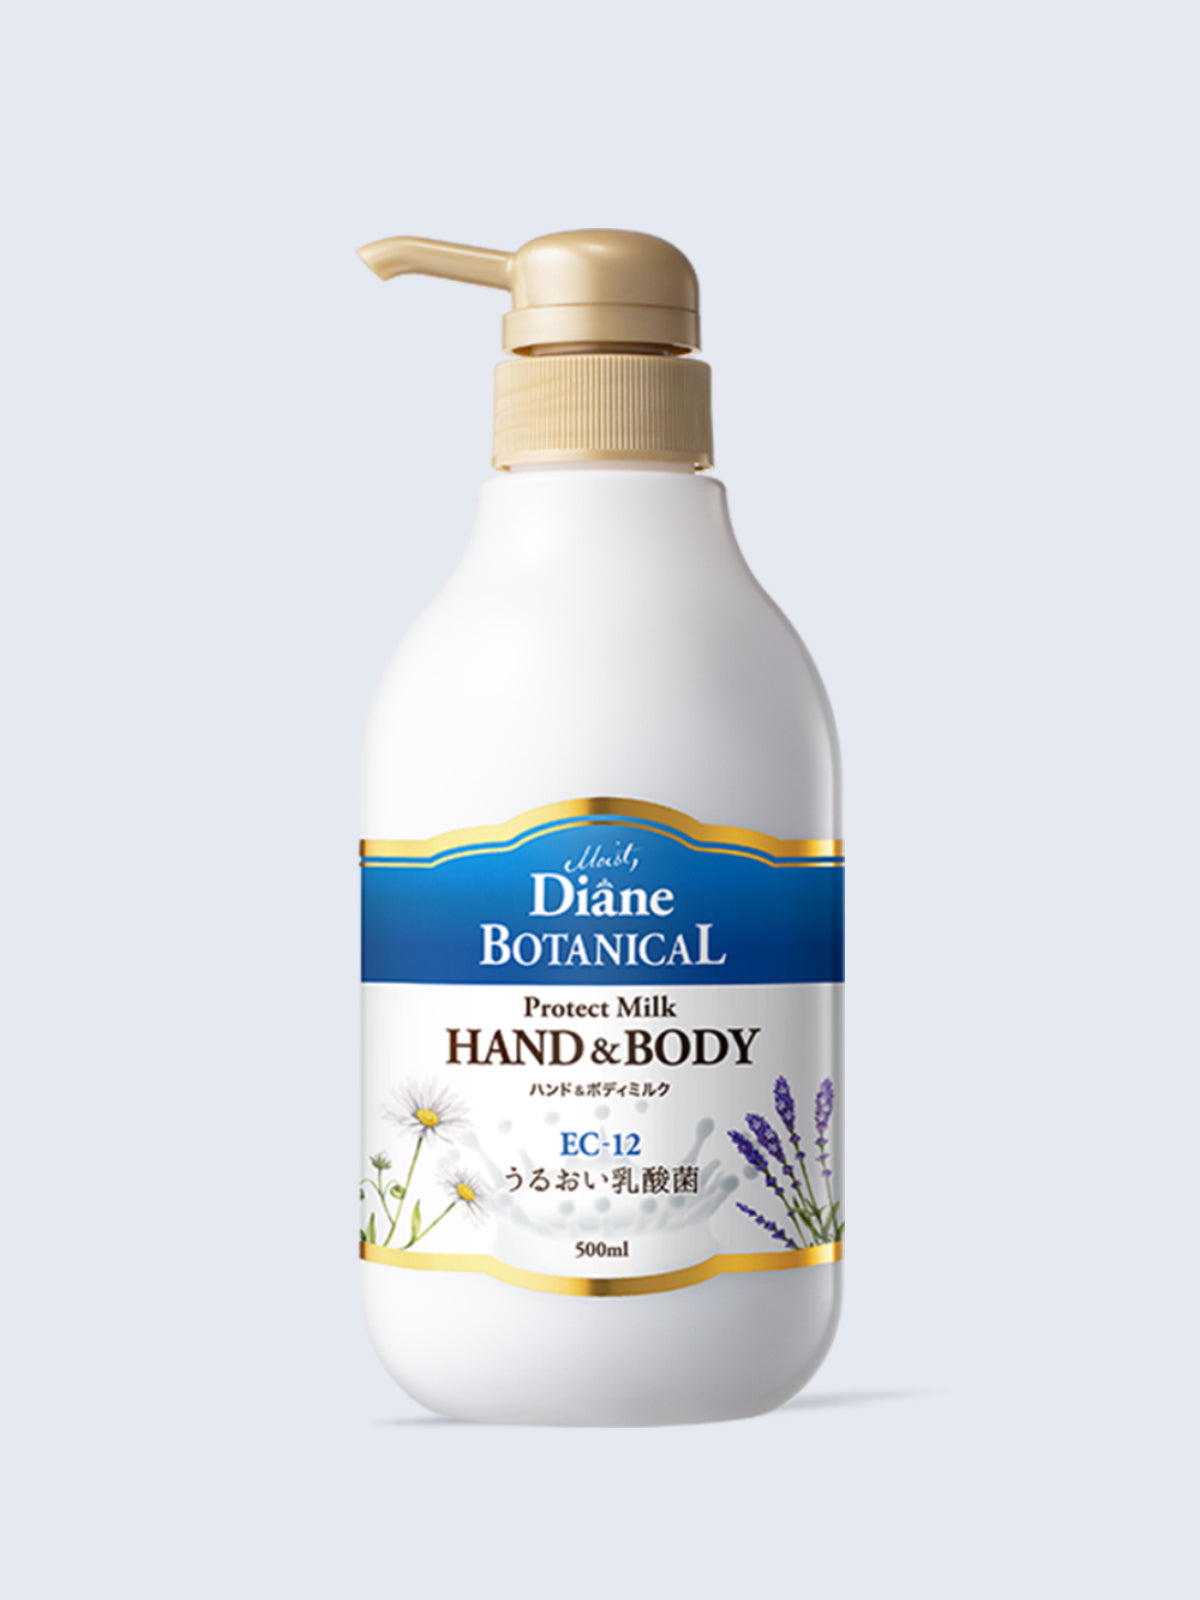 ボディミルク [乳酸菌ベールで潤い守る] バーベナ&ハニーの香り ダイアンボタニカル プロテクト 500mL